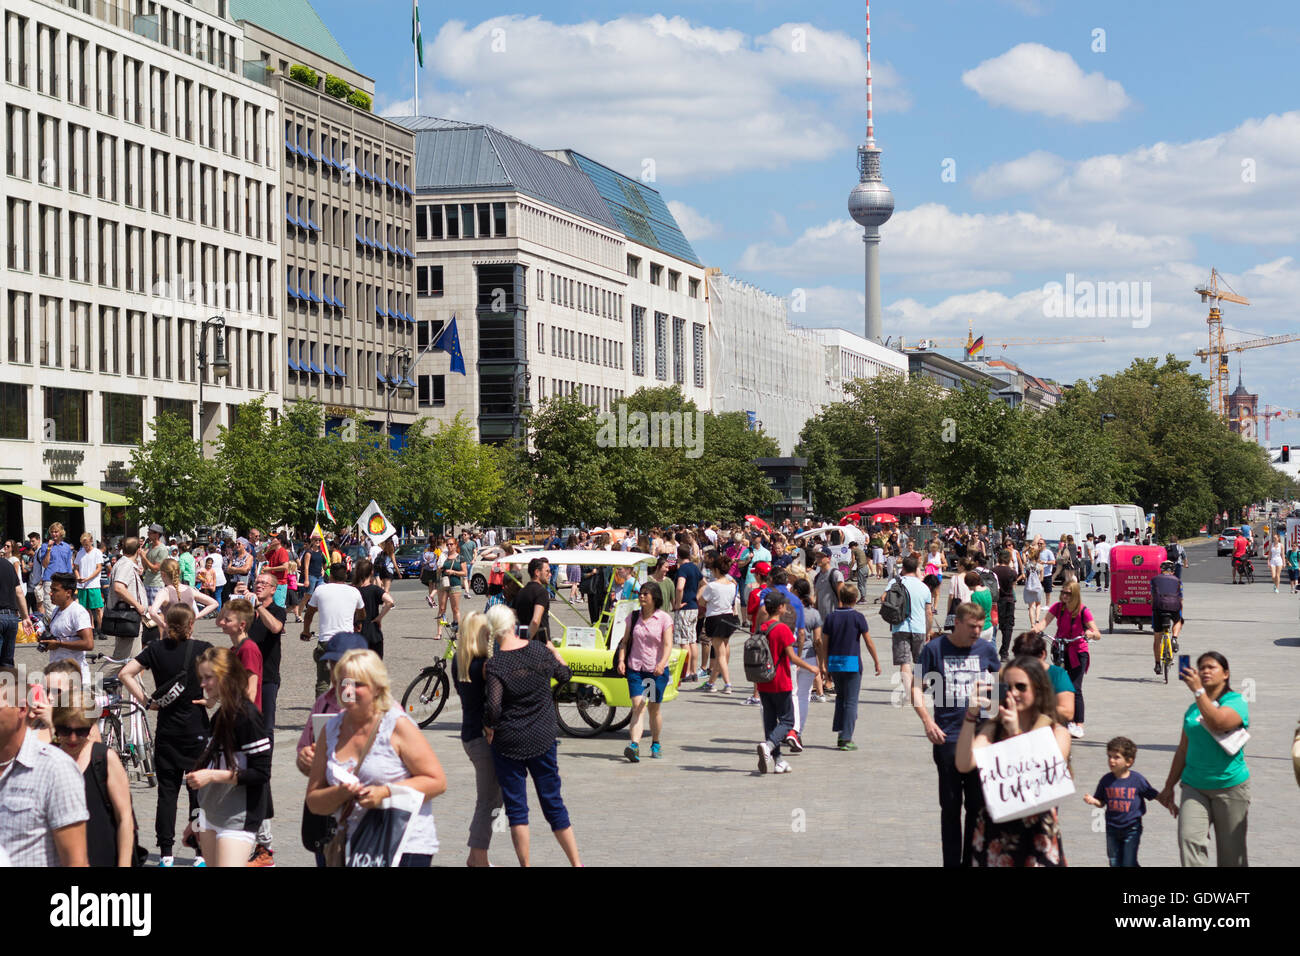 Viele Touristen überfüllten Pariser Platz in Berlin, Deutschland. Stockfoto